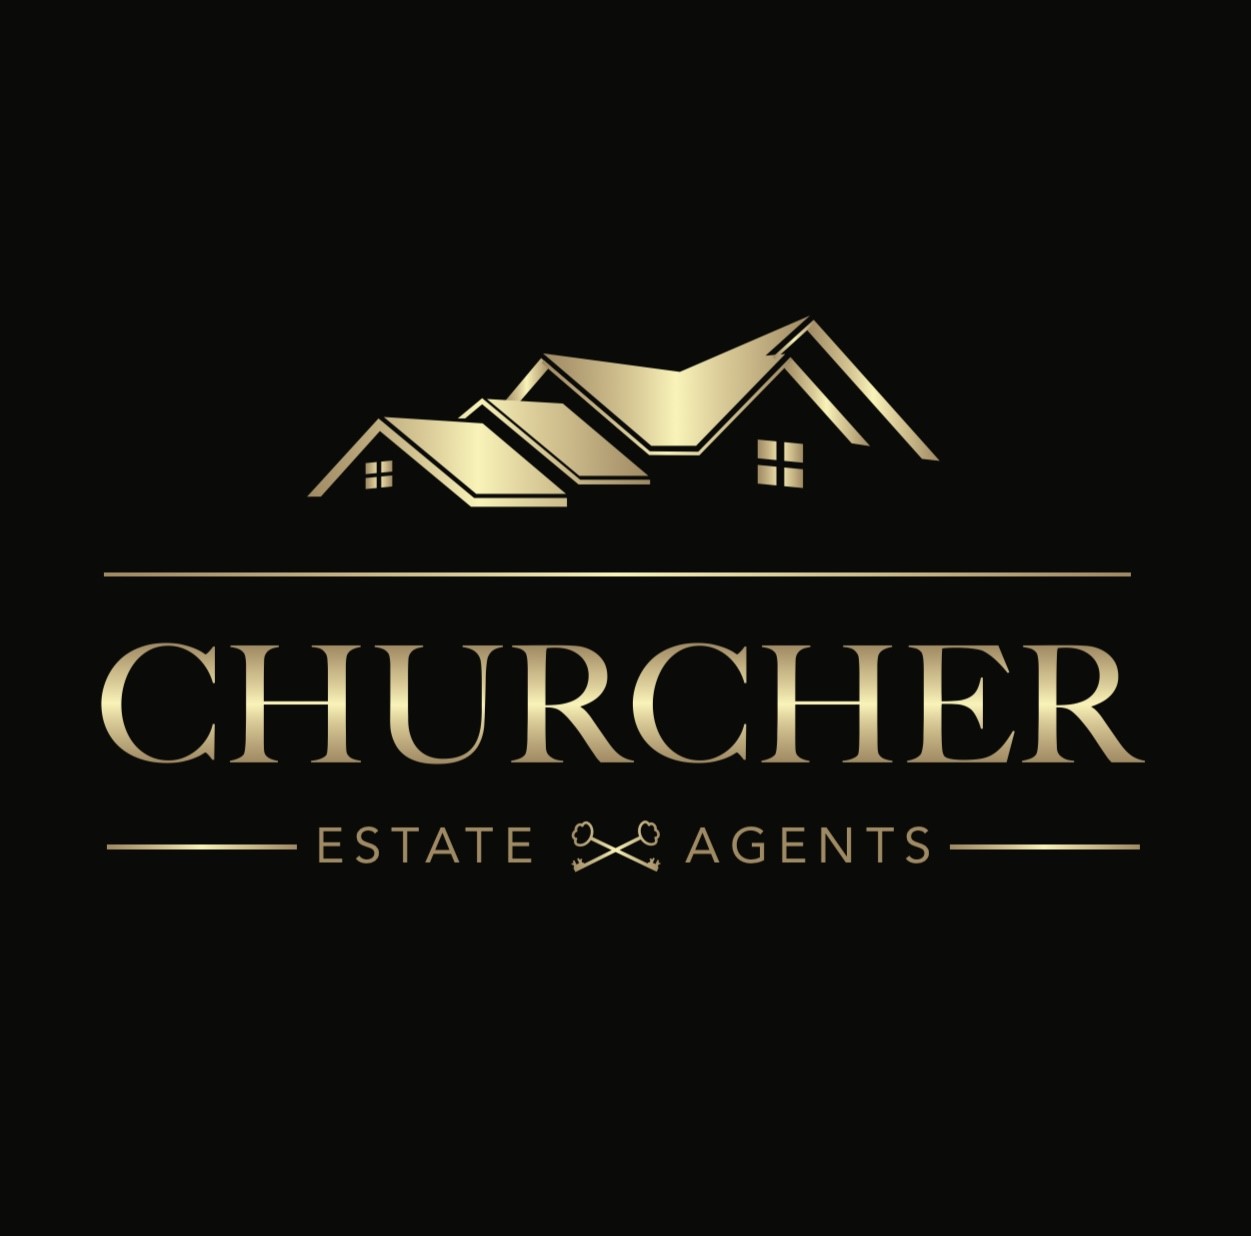 Churcher Estates